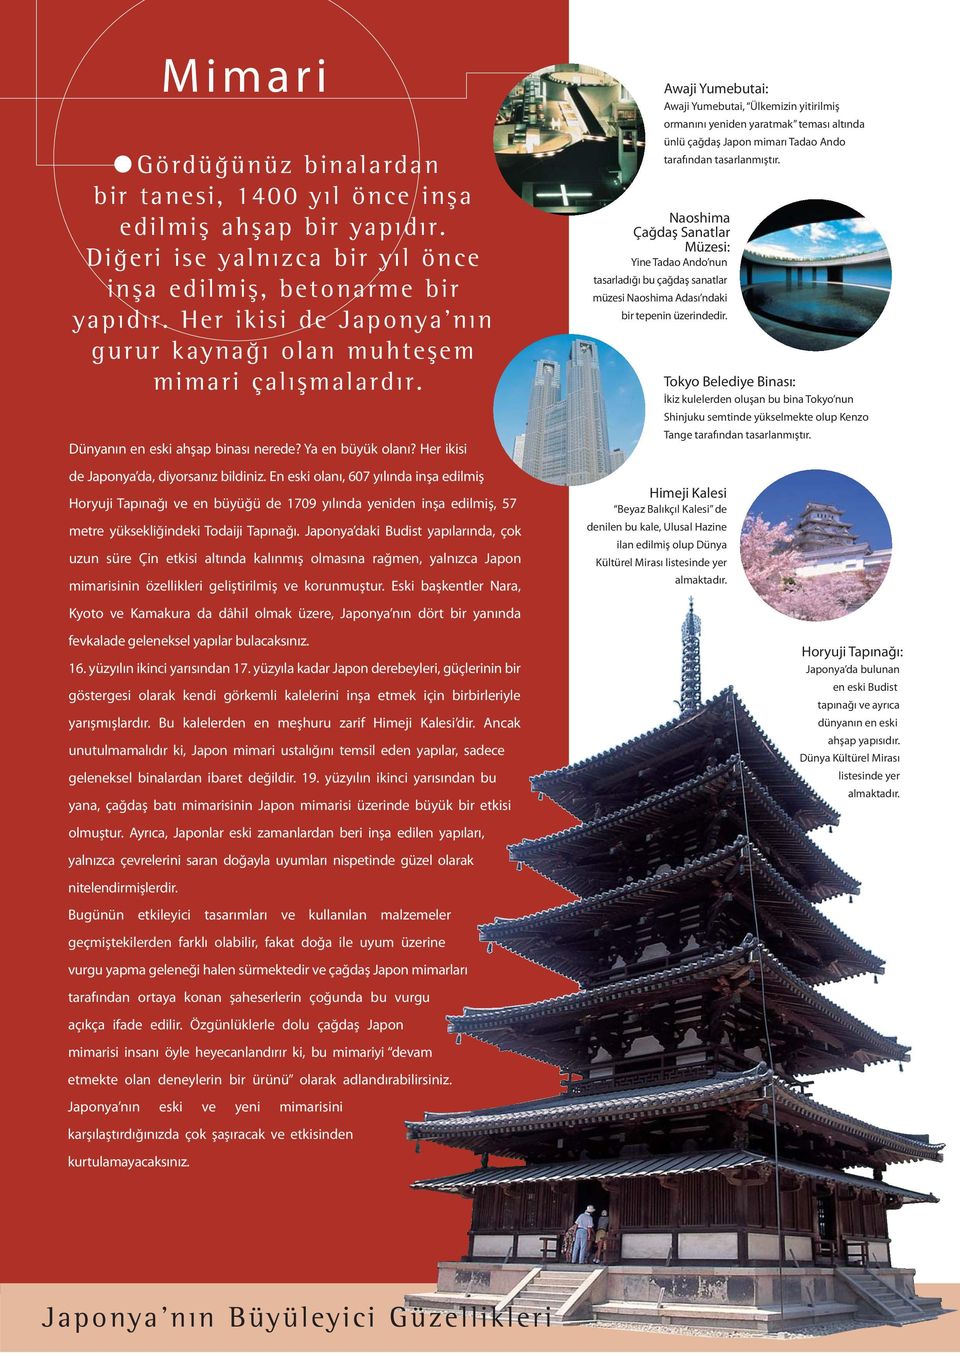 En eski olanı, 607 yılında inşa edilmiş Horyuji Tapınağı ve en büyüğü de 1709 yılında yeniden inşa edilmiş, 57 metre yüksekliğindeki Todaiji Tapınağı.